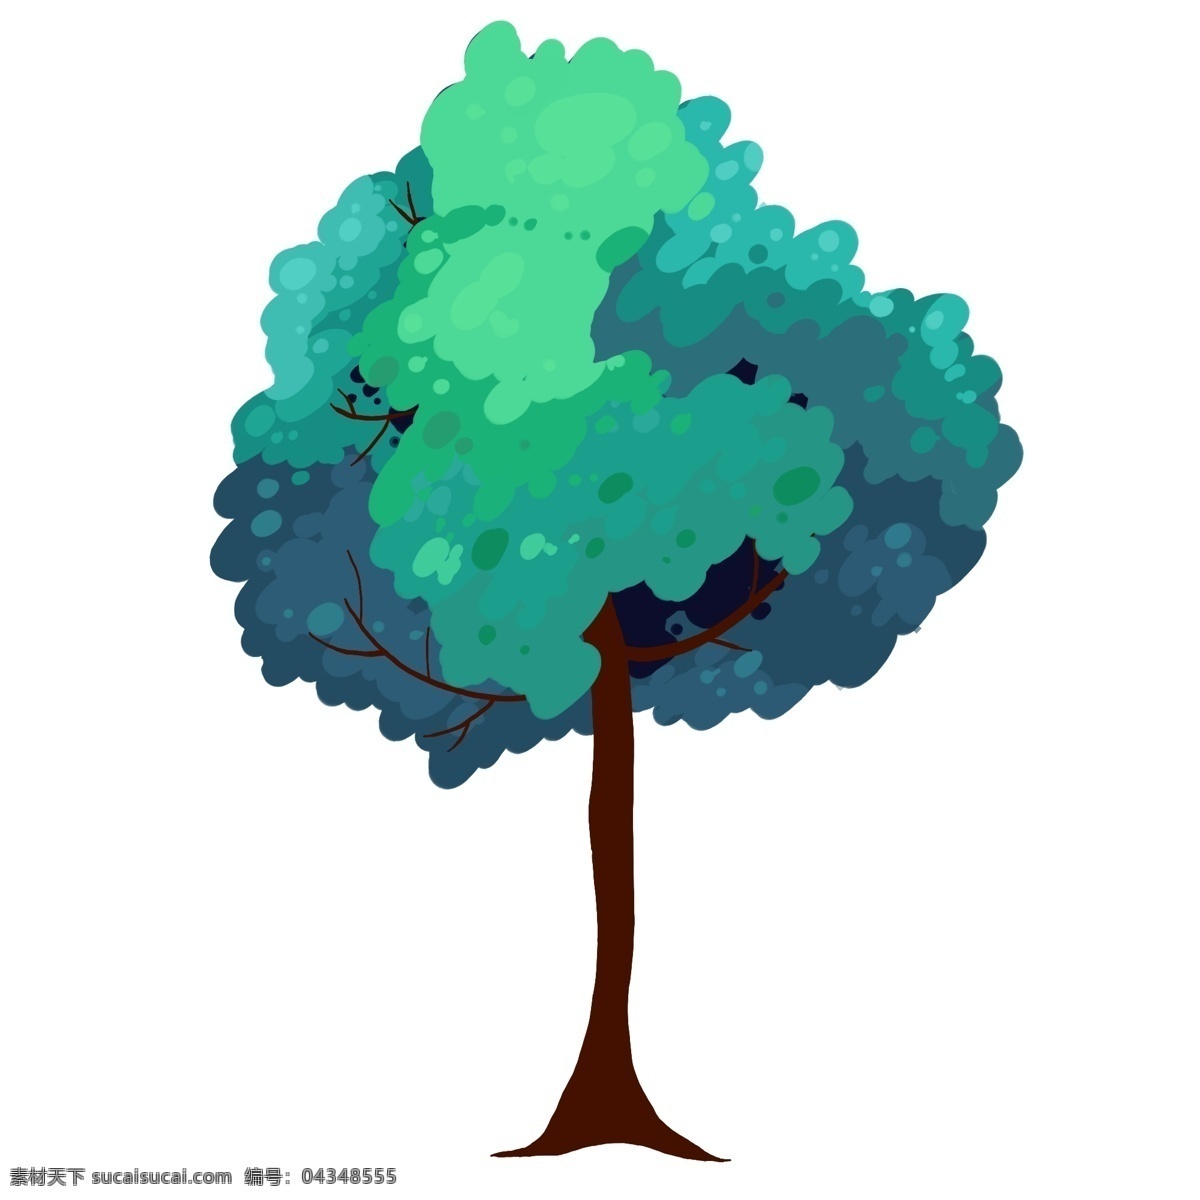 精美 绿色 大树 插画 大树插画 绿色的树叶 卡通植物插画 精美的植物 绿色植物 创意树木